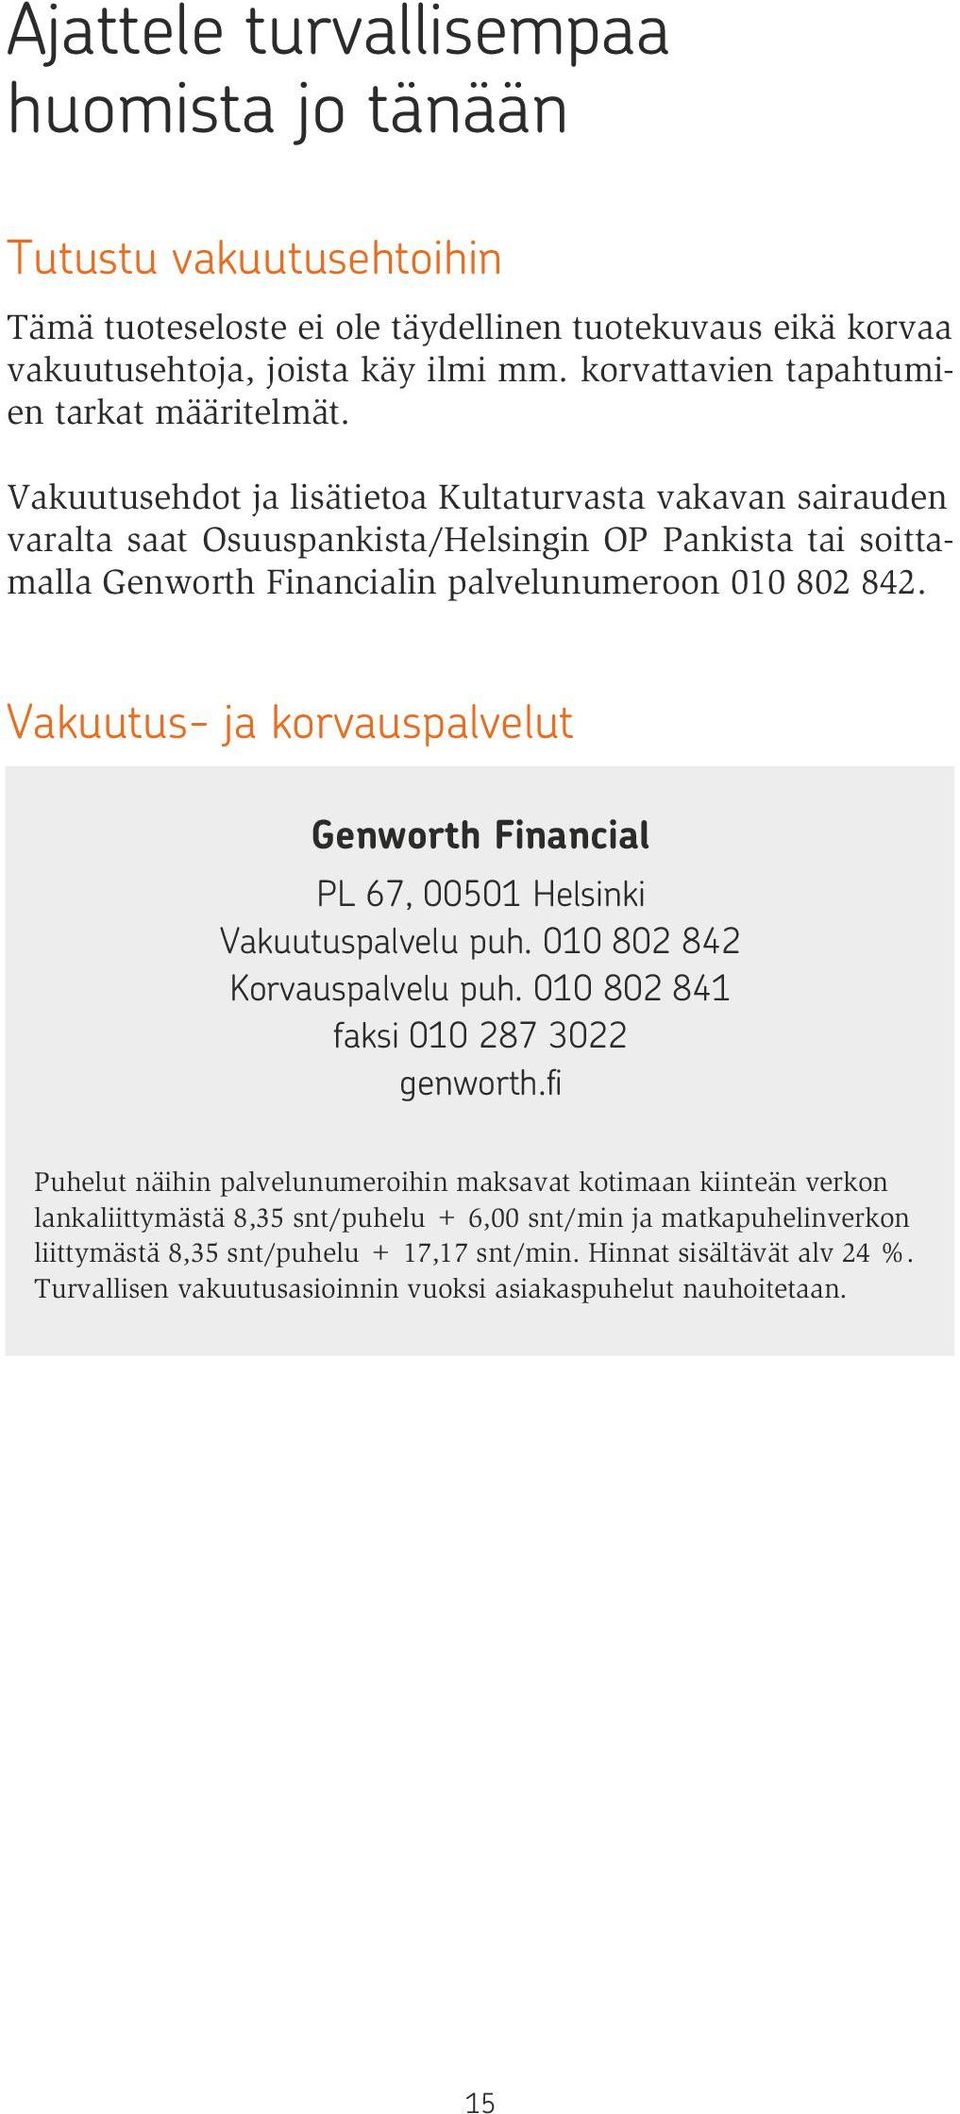 Vakuutusehdot ja lisätietoa Kultaturvasta vakavan sairauden varalta saat Osuuspankista/Helsingin OP Pankista tai soittamalla Genworth Financialin palvelunumeroon 010 802 842.